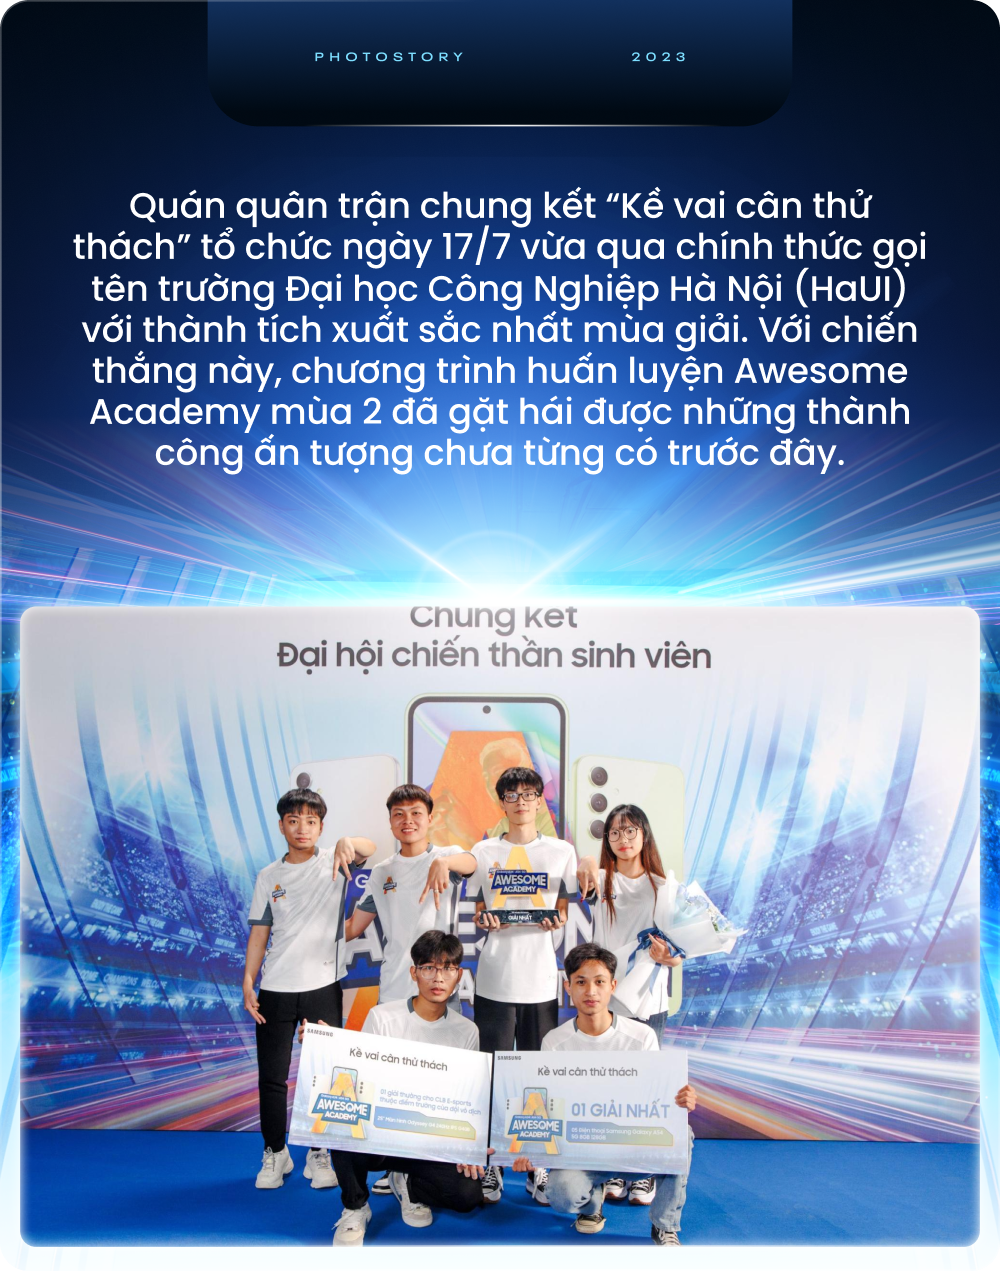 Mùa 2 của Awesome Academy đã đem đến giá trị gì cho sinh viên Việt Nam - Ảnh 2.